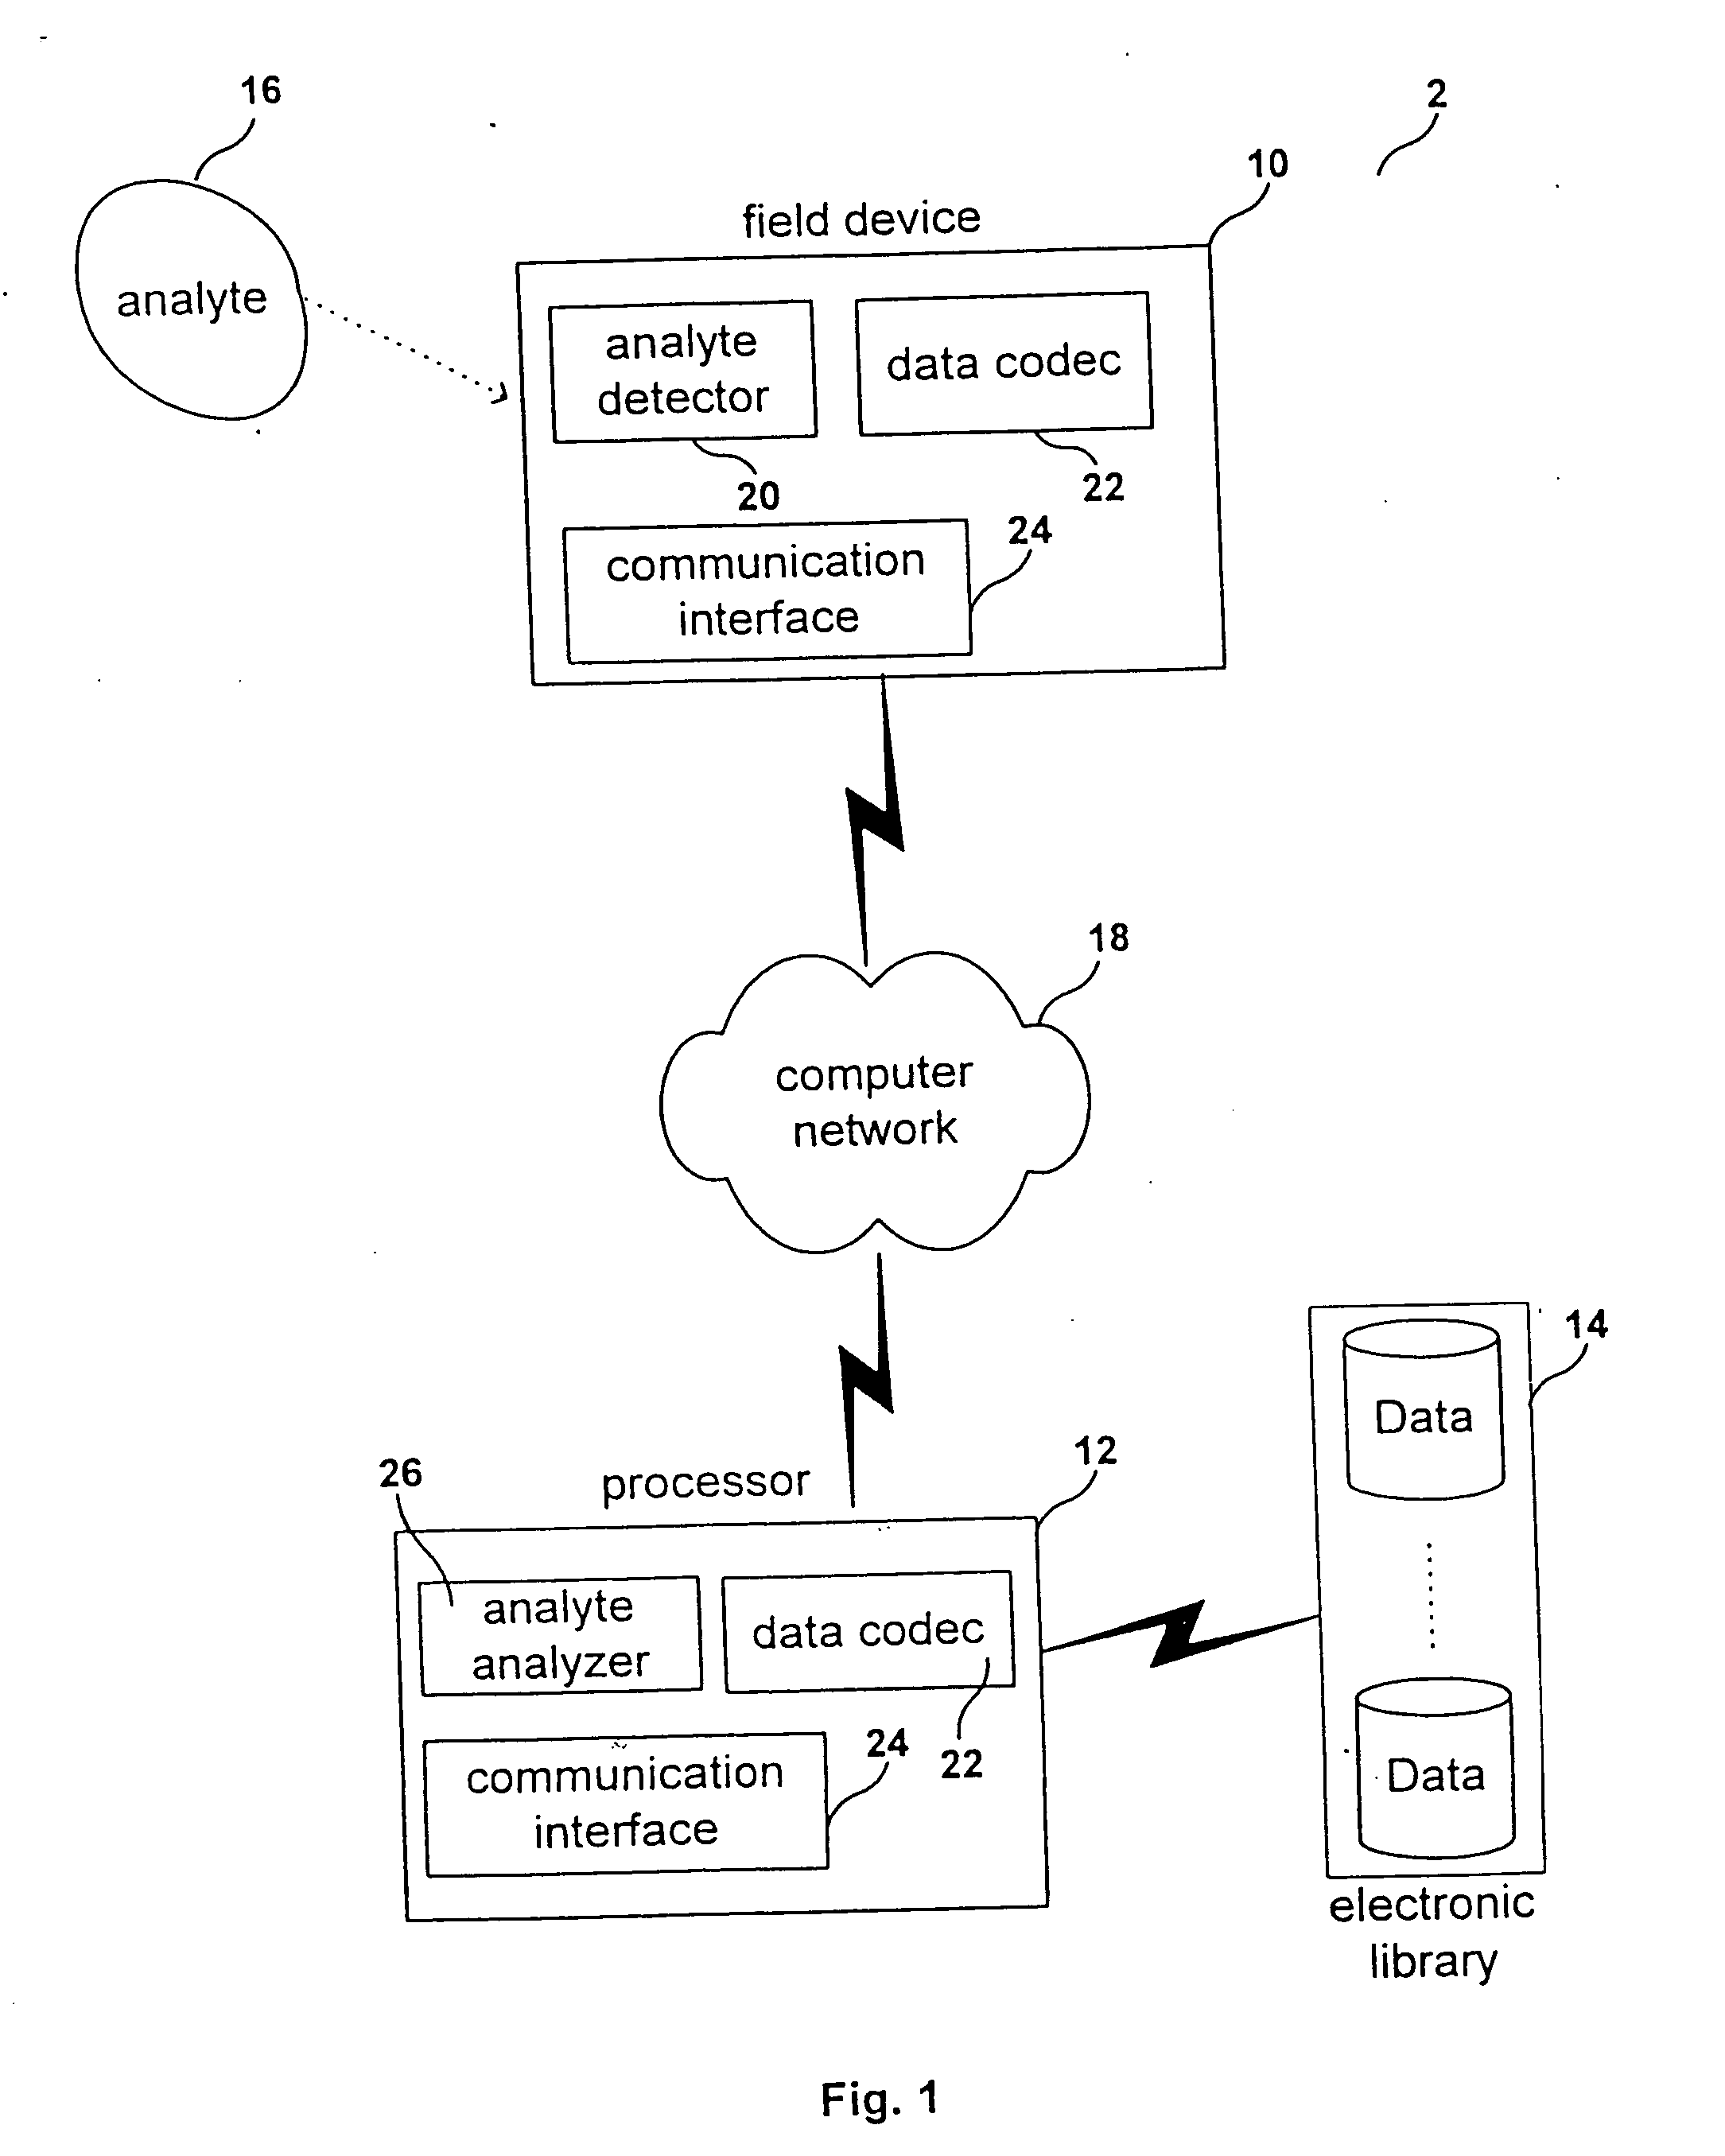 Computer code for portable sensing